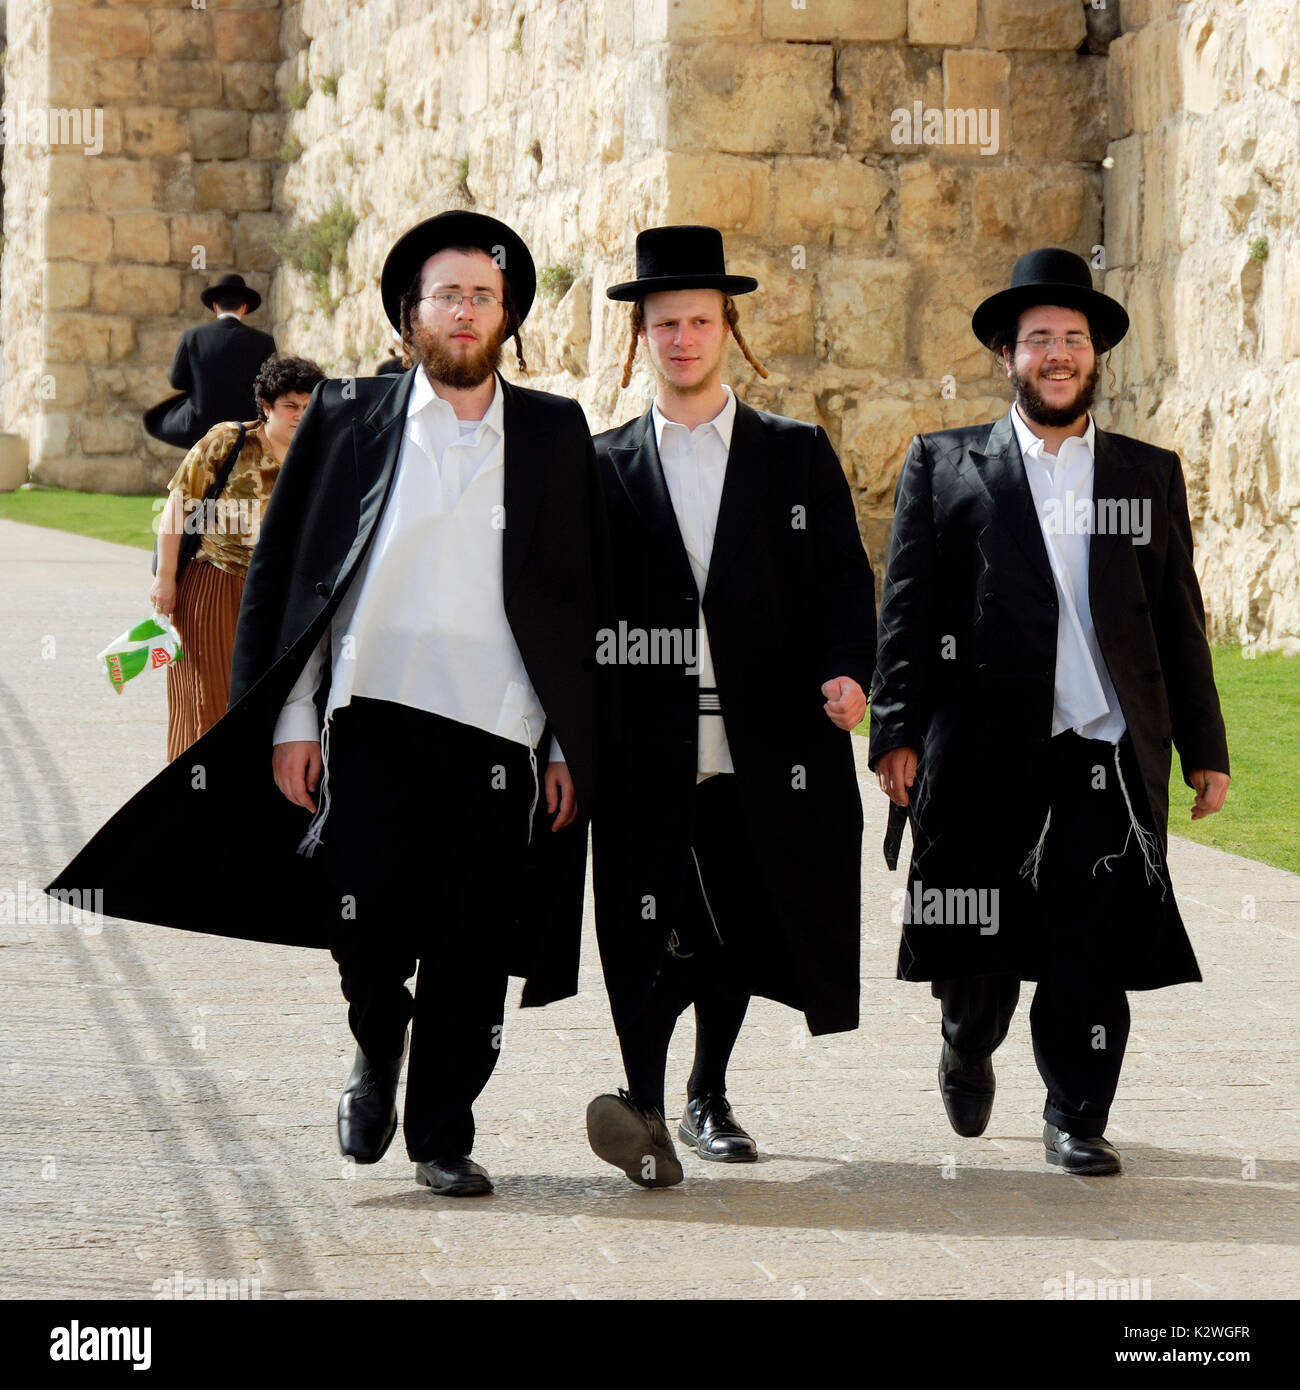 Les juifs orthodoxes à marcher le long des murs de la ville, près de la porte de Jaffa, l'entrée à l'extrémité ouest de la vieille ville de Jérusalem. Israël Banque D'Images